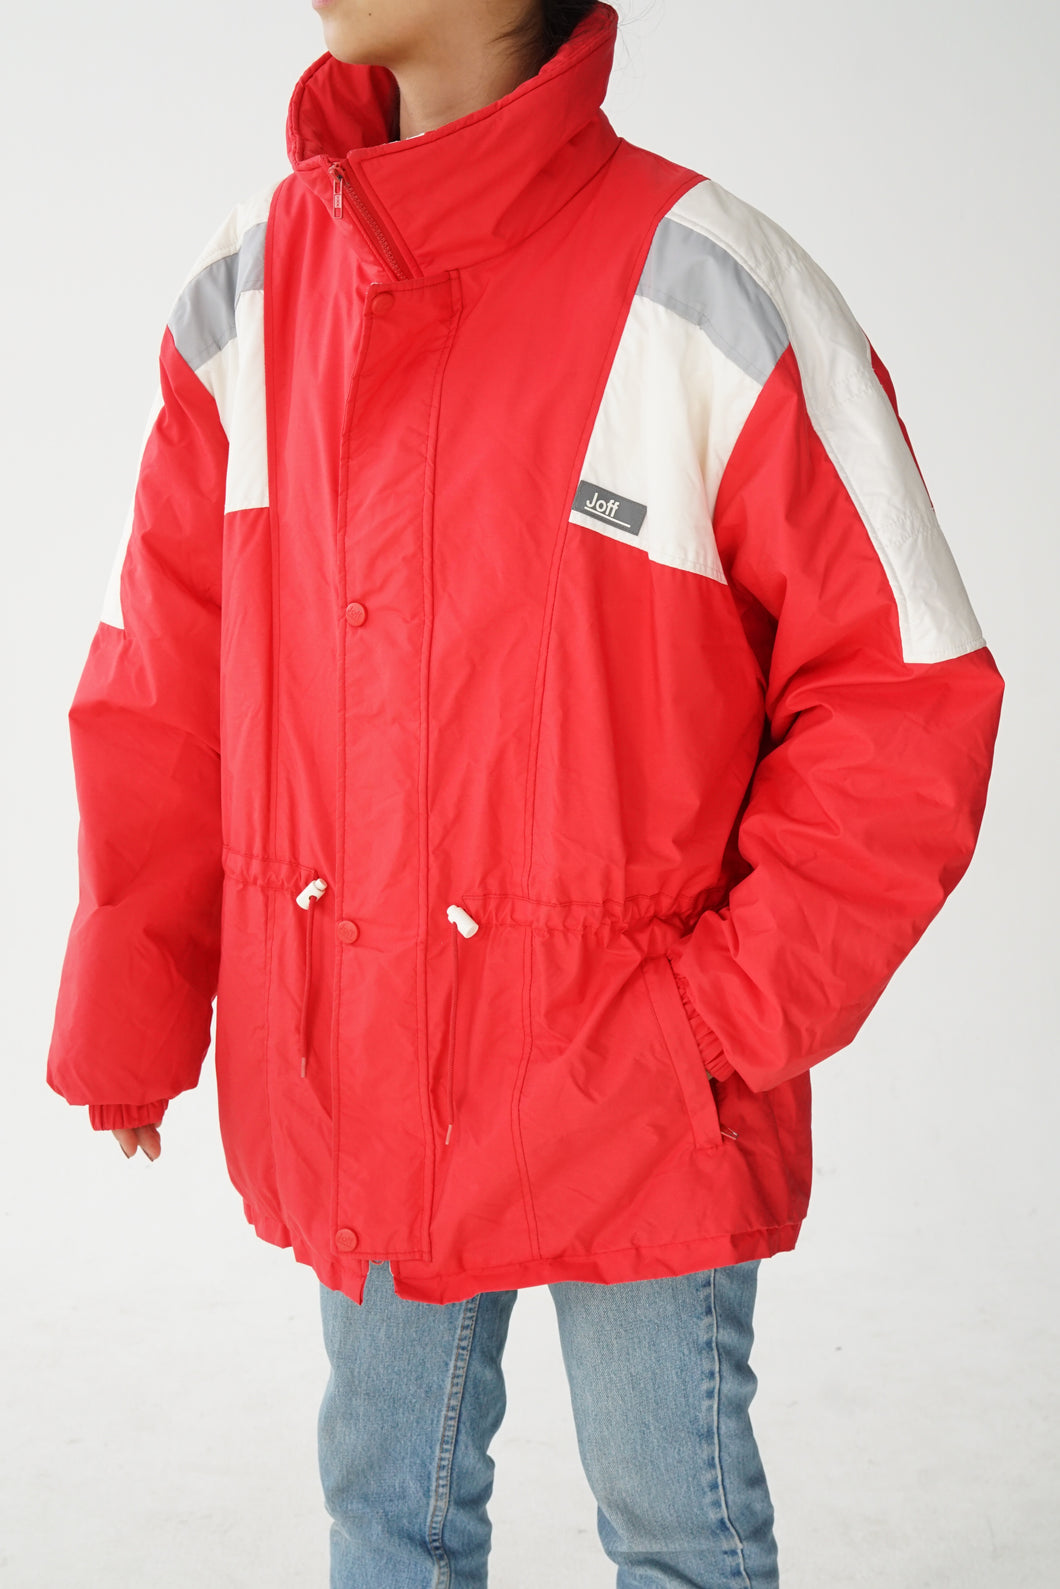 Manteau d'hiver Joff rouge et blanc fait au Canada unisex taille 44 (M-L)